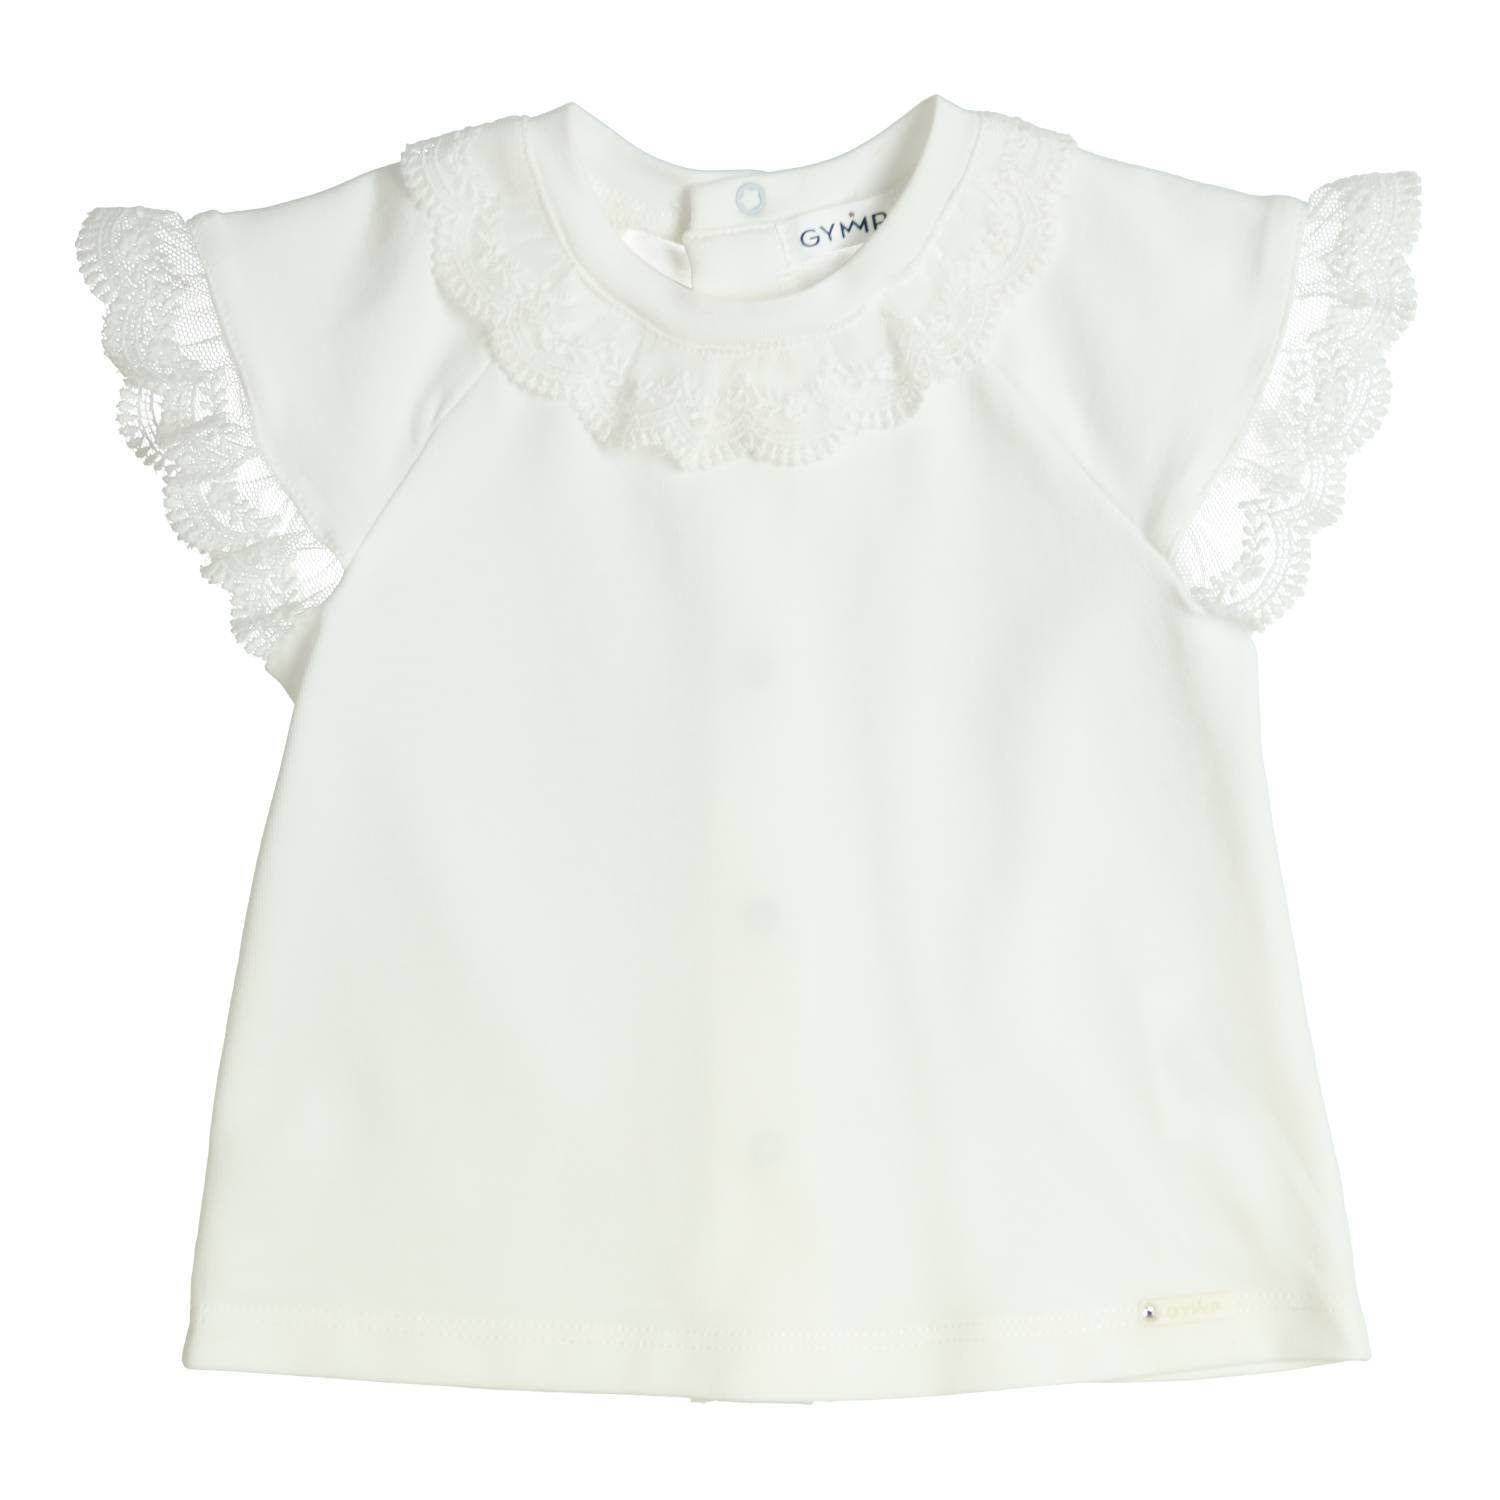 Meisjes T-shirt Aerobic van Gymp in de kleur Off White in maat 86.